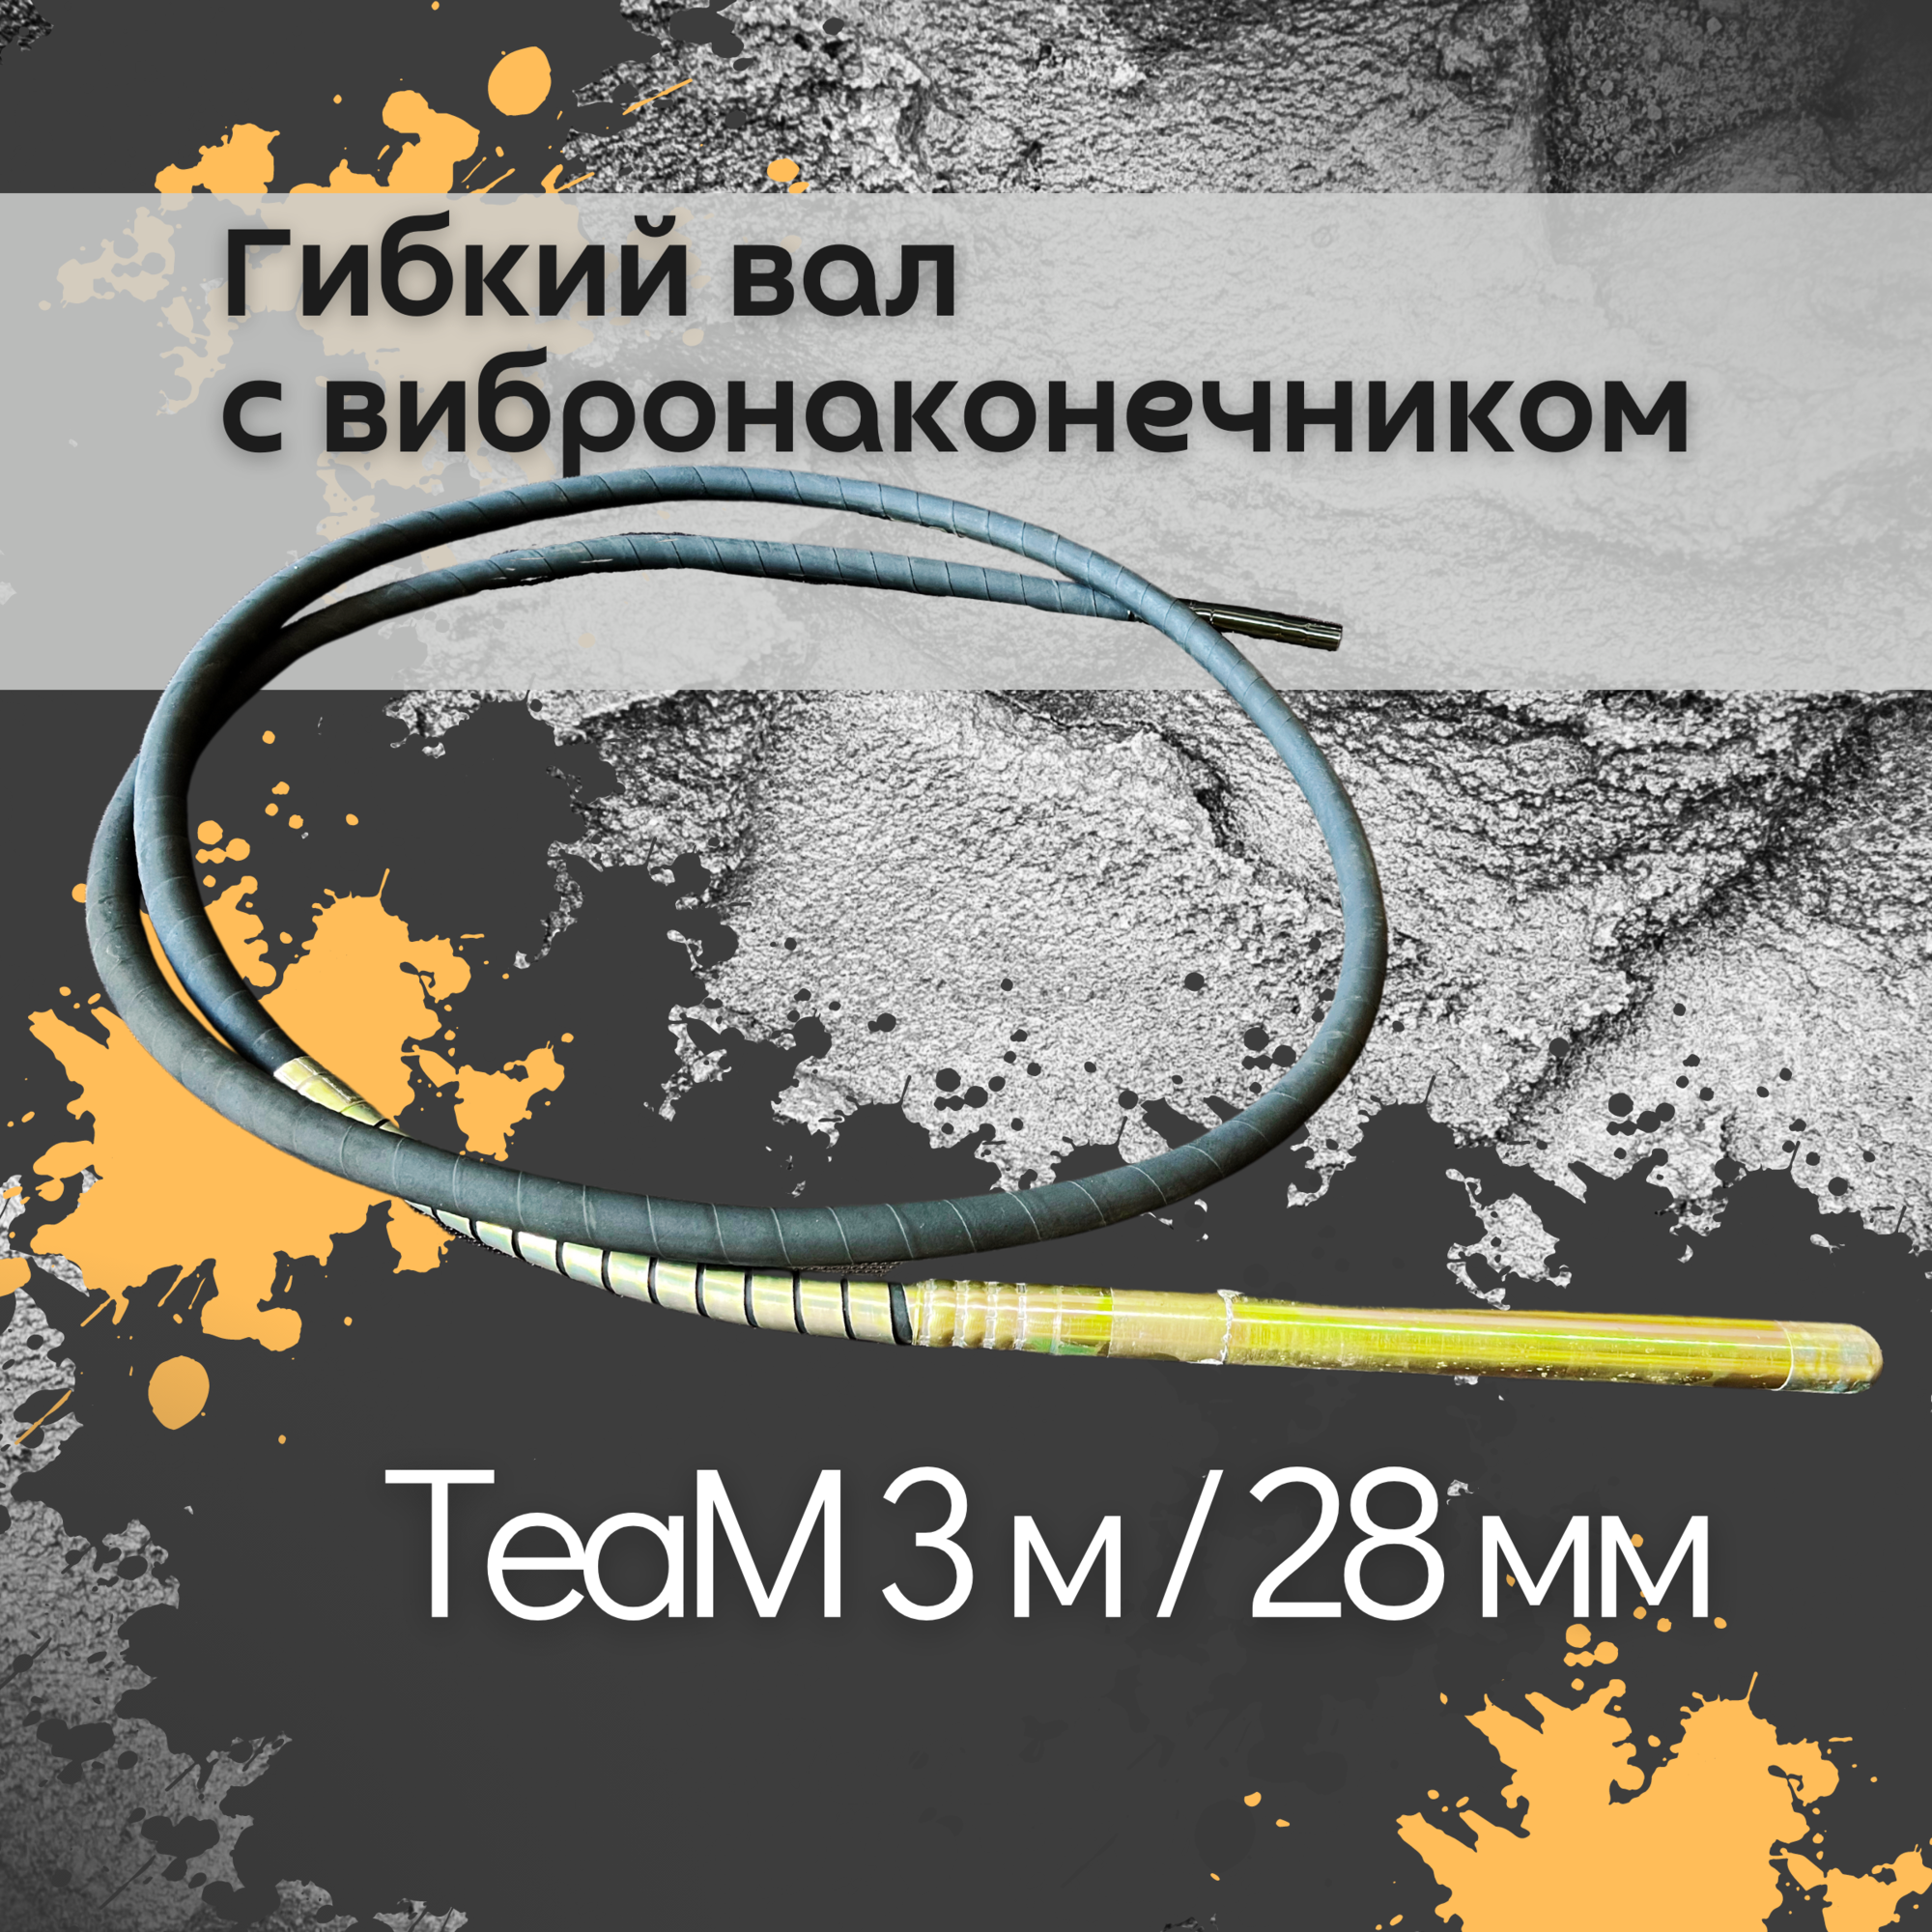 Гибкий вал с вибронаконечником TeaM 3 м / 28 мм